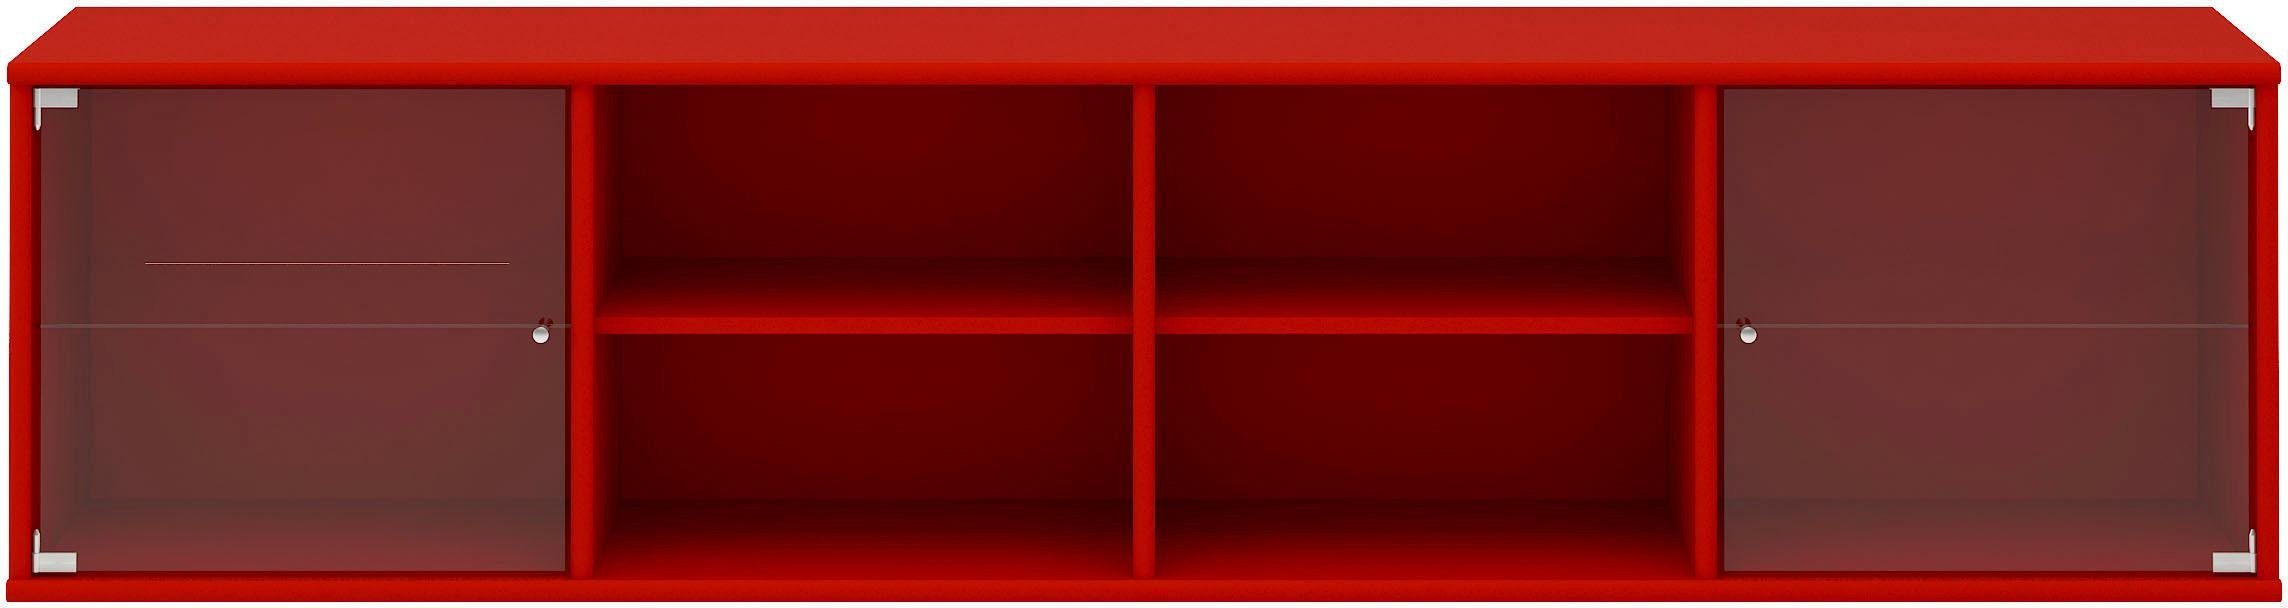 Hammel Furniture Regal Mistral, Hochwertig Lowboard, hängend/stehend montierbar, mit zwei Glastüren, B: 177 cm, lowboard, anpassungsbar Designmöbel rot